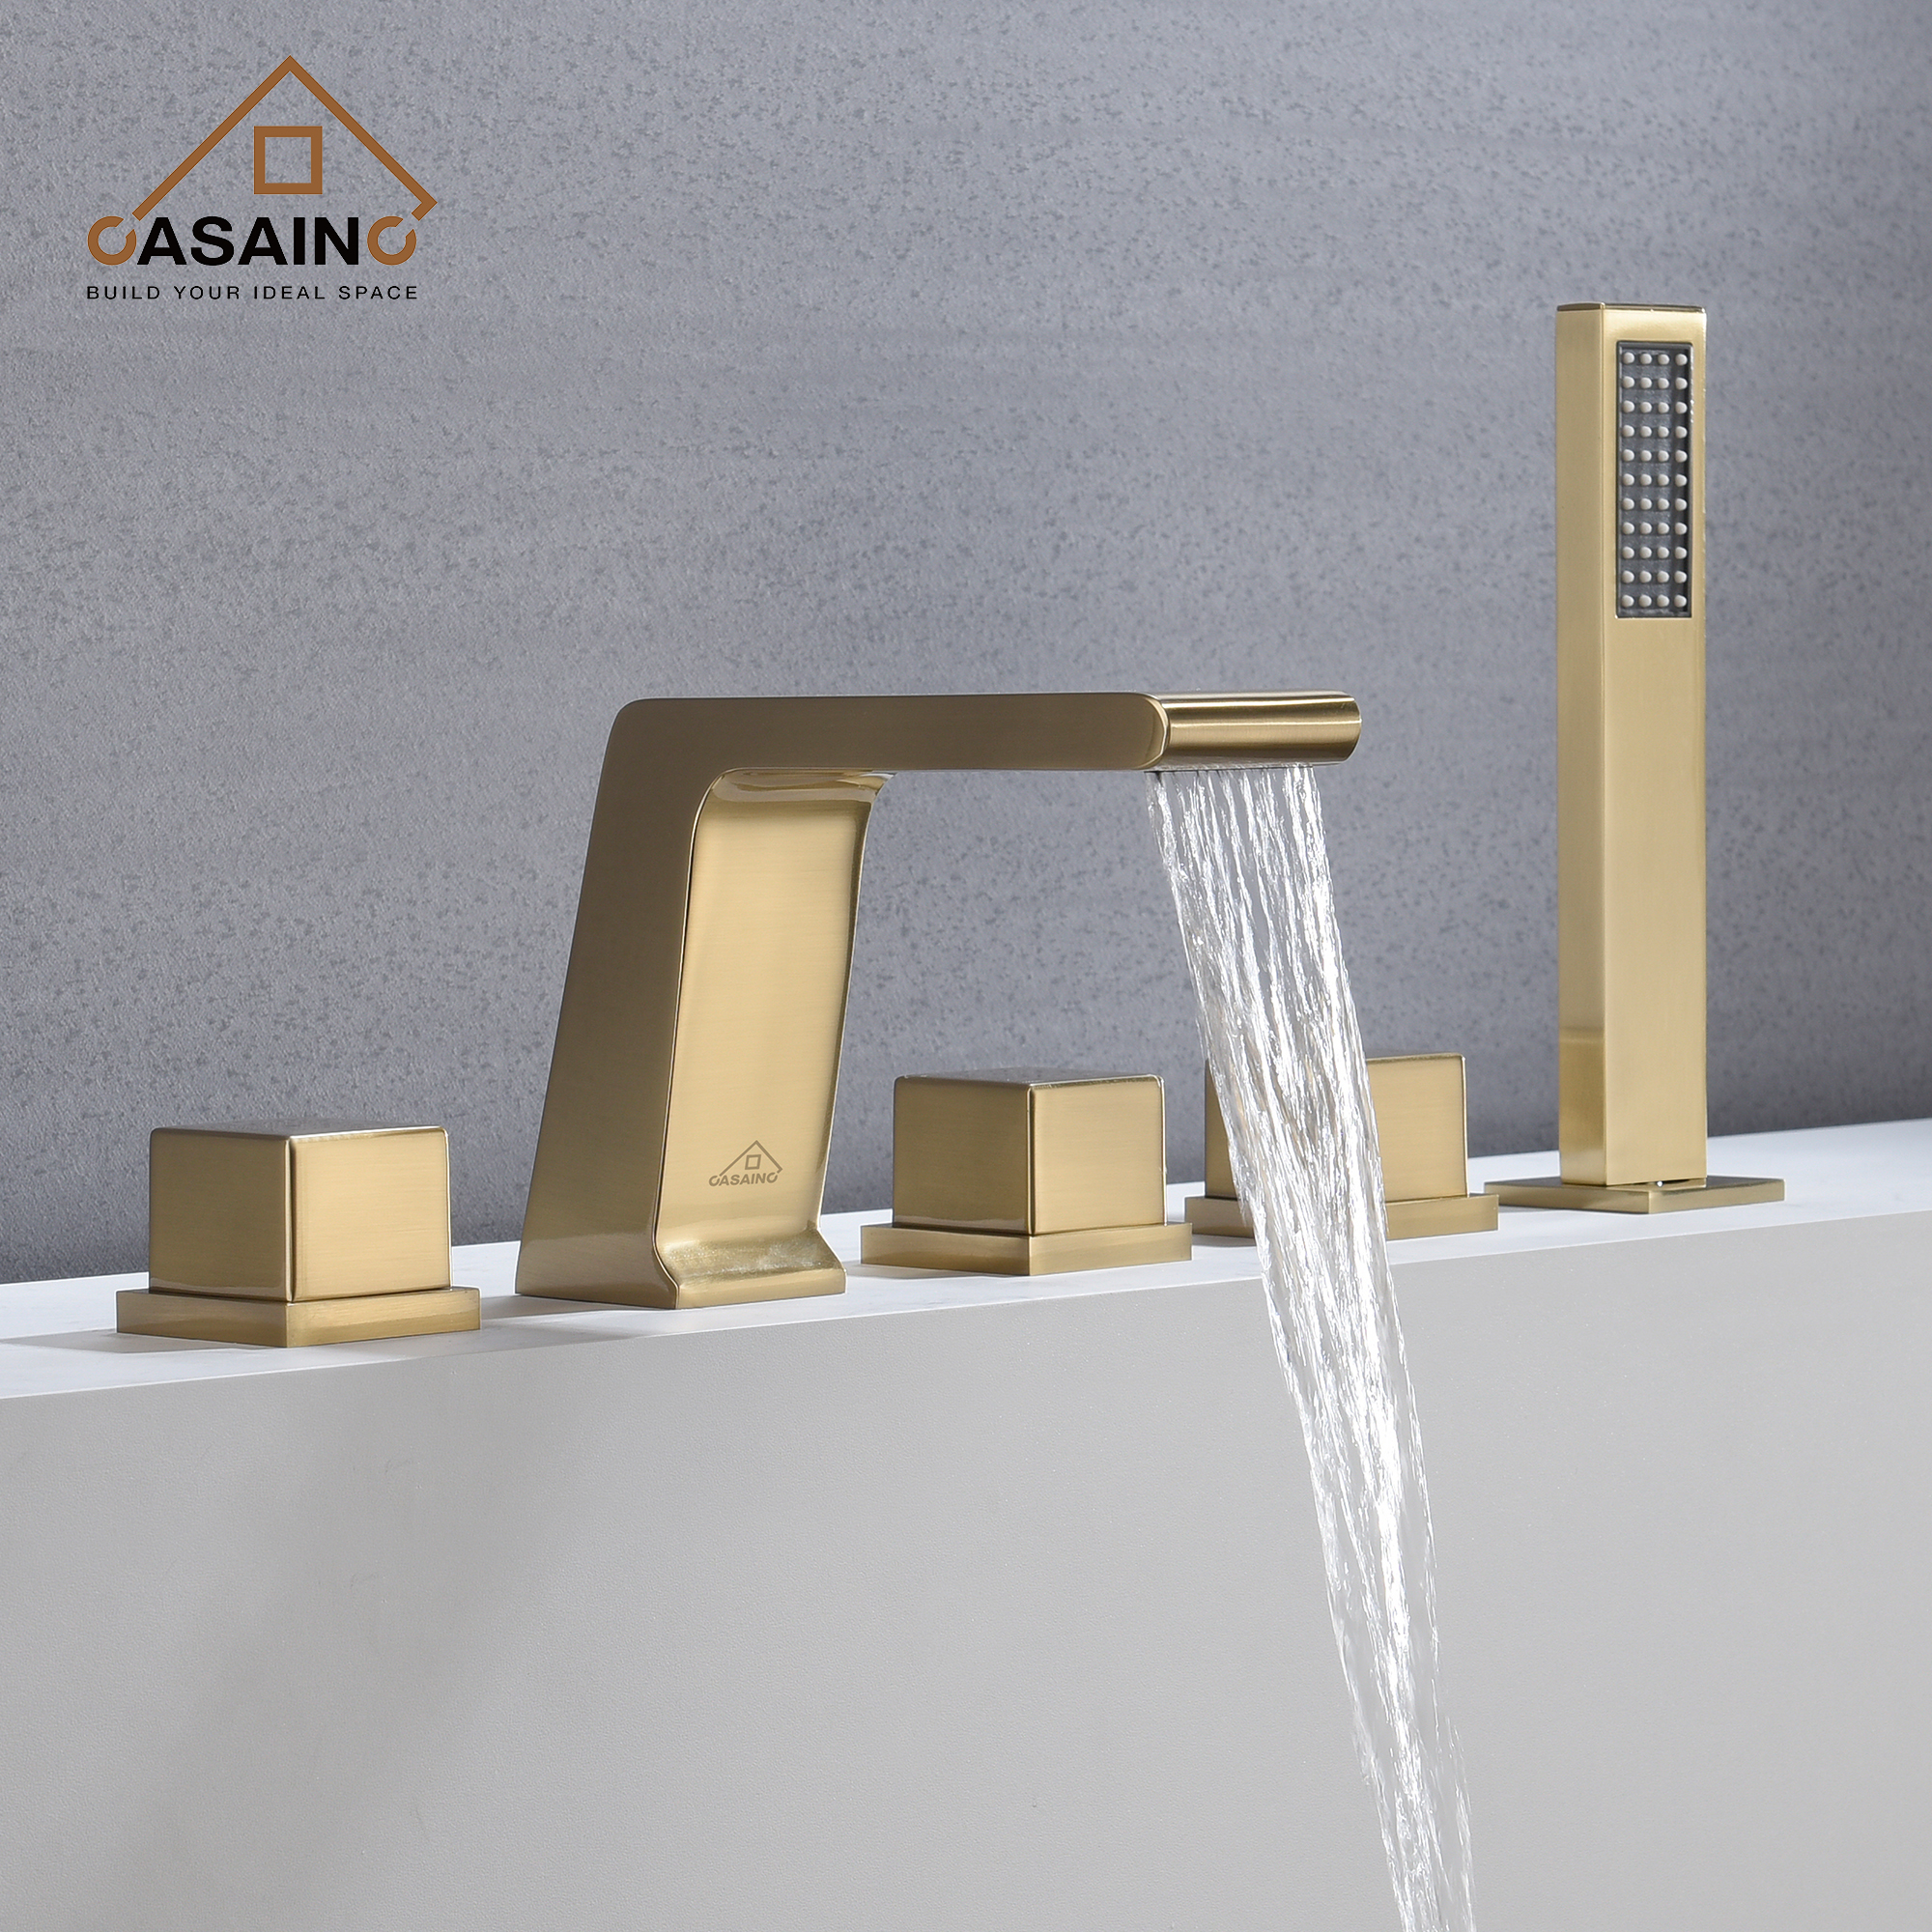 CASAINC Hot Sale 5 hole Bathtub Faucet With Handheld Shower Head,bathtub faucets,tub spout,shower faucet